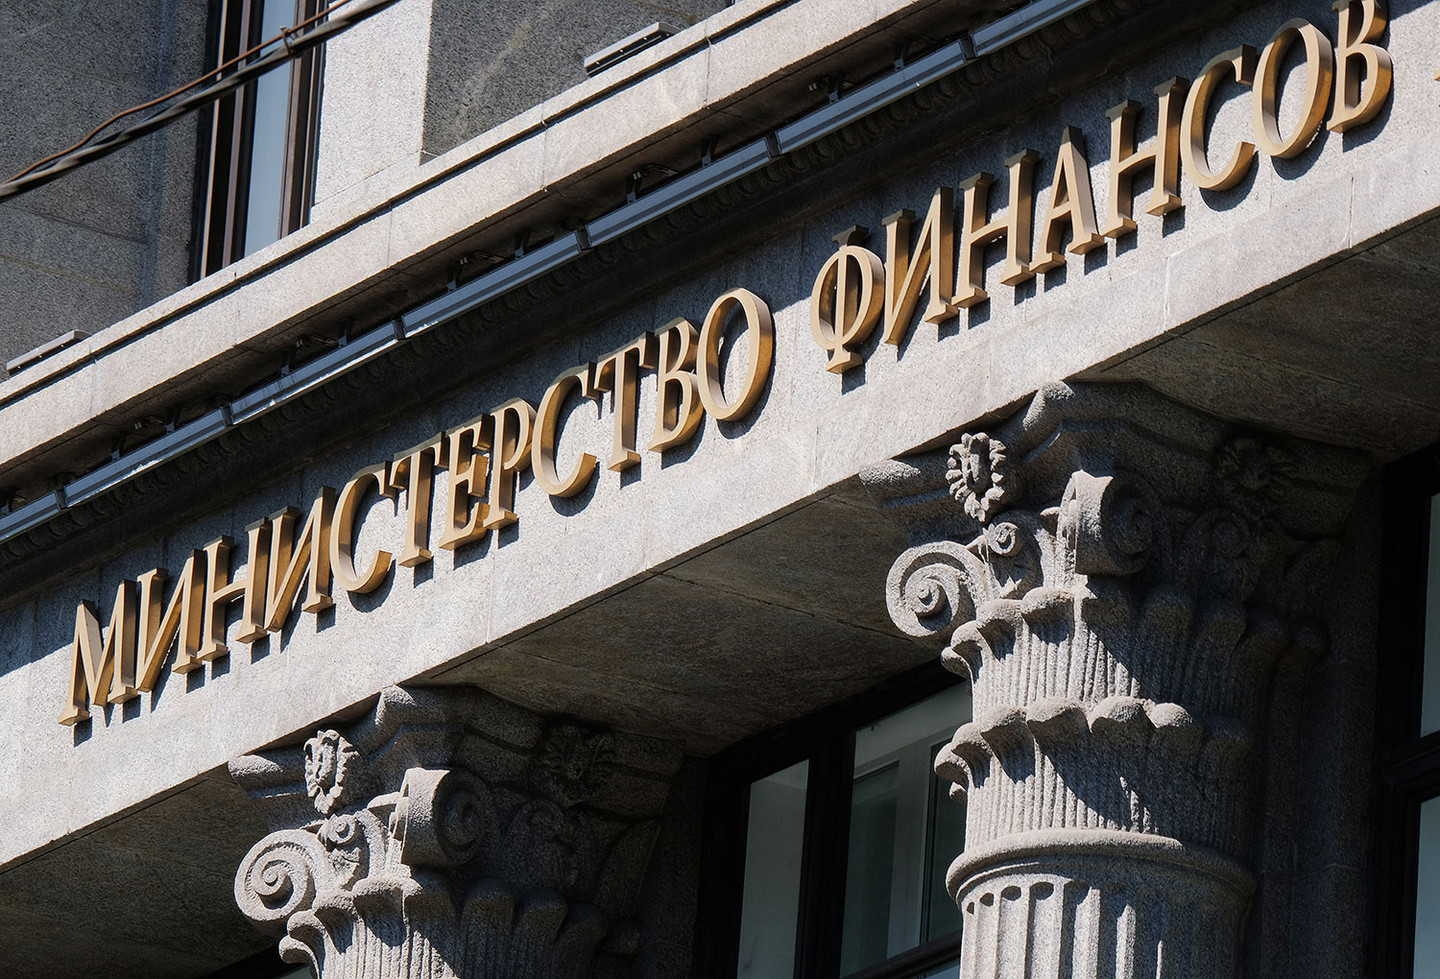 Минфин РФ завершил подготовку второго оптимизационного пакета поправок к закону о госзакупках